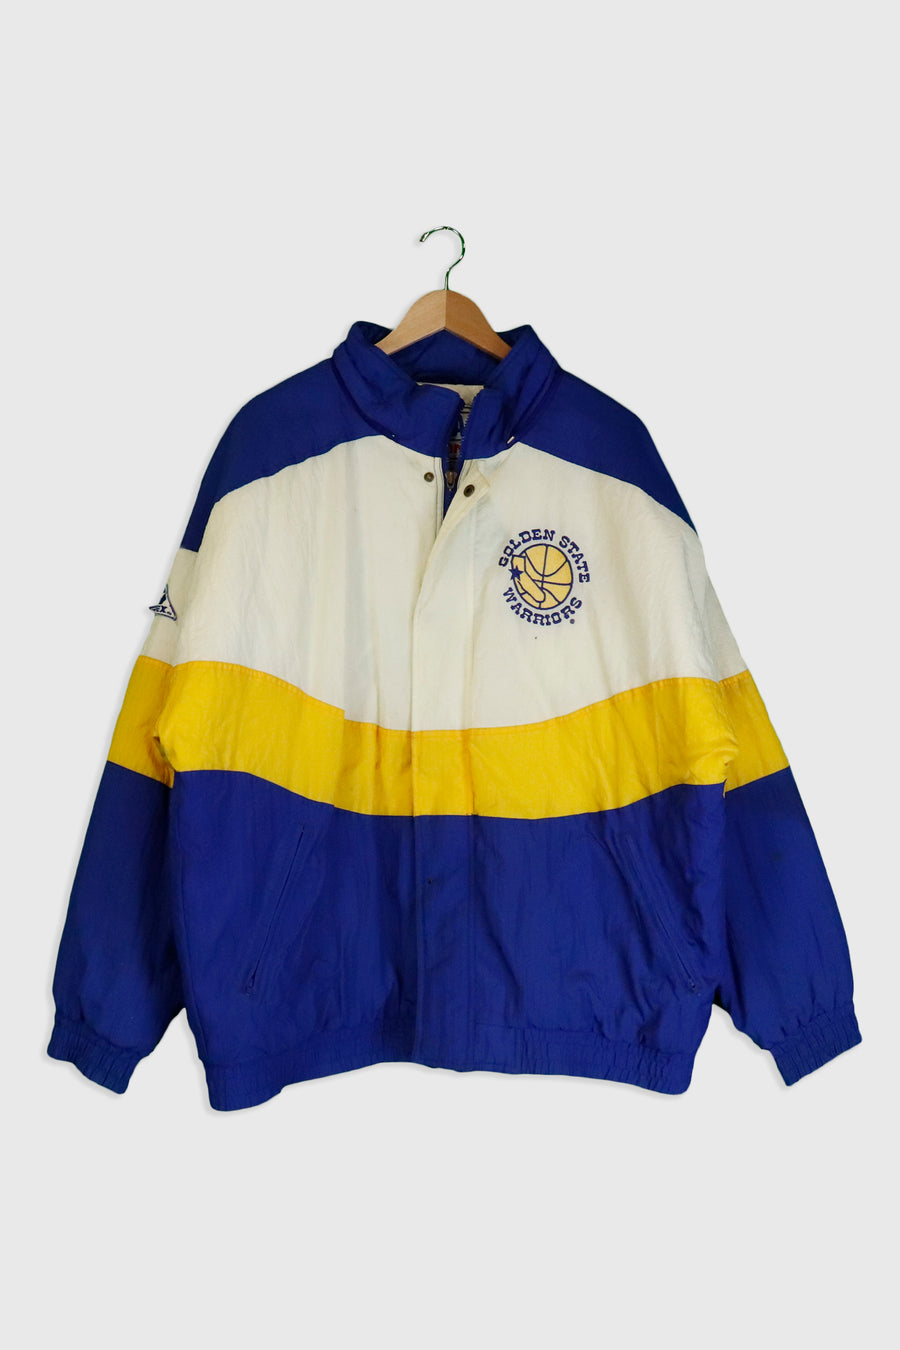 Vintage NBA Apex One Golden State Warriors Jacket Sz XL